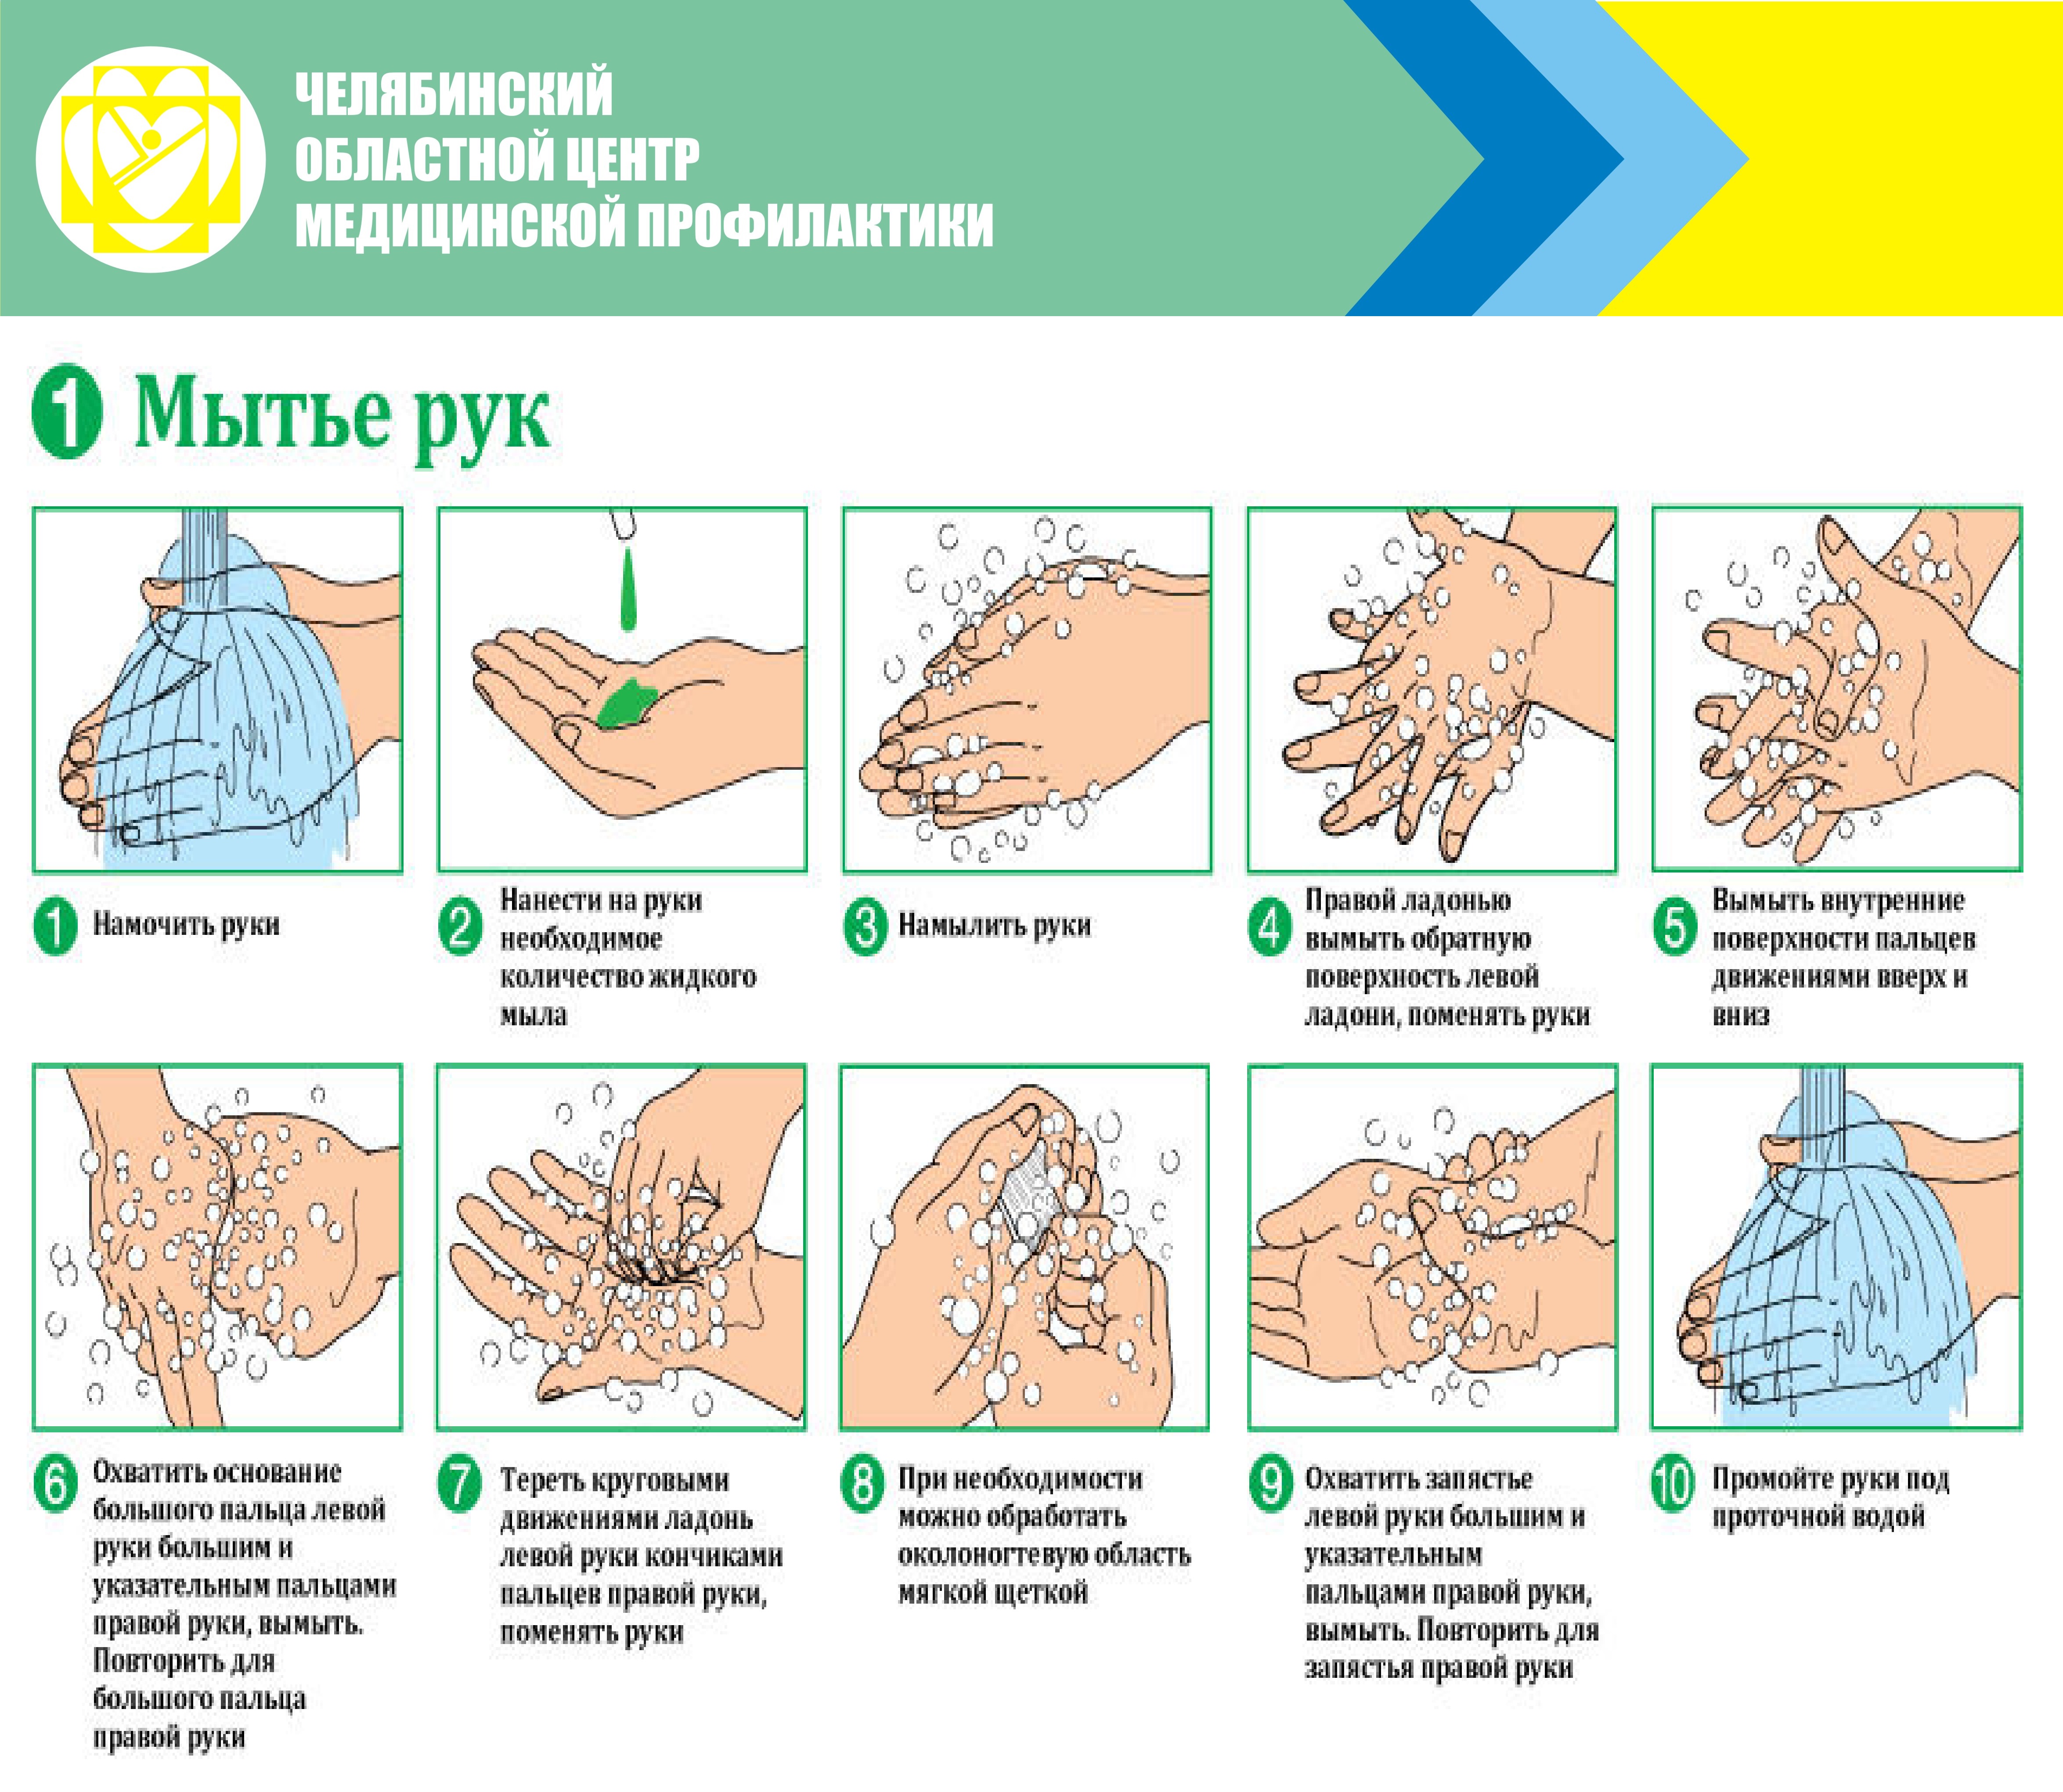 Этапы мытья рук. Алгоритм гигиенической обработки рук мытье. Гигиеническая обработка рук мытье рук с использованием. Правила гигиенического мытья рук. Инструкция мытья рук.